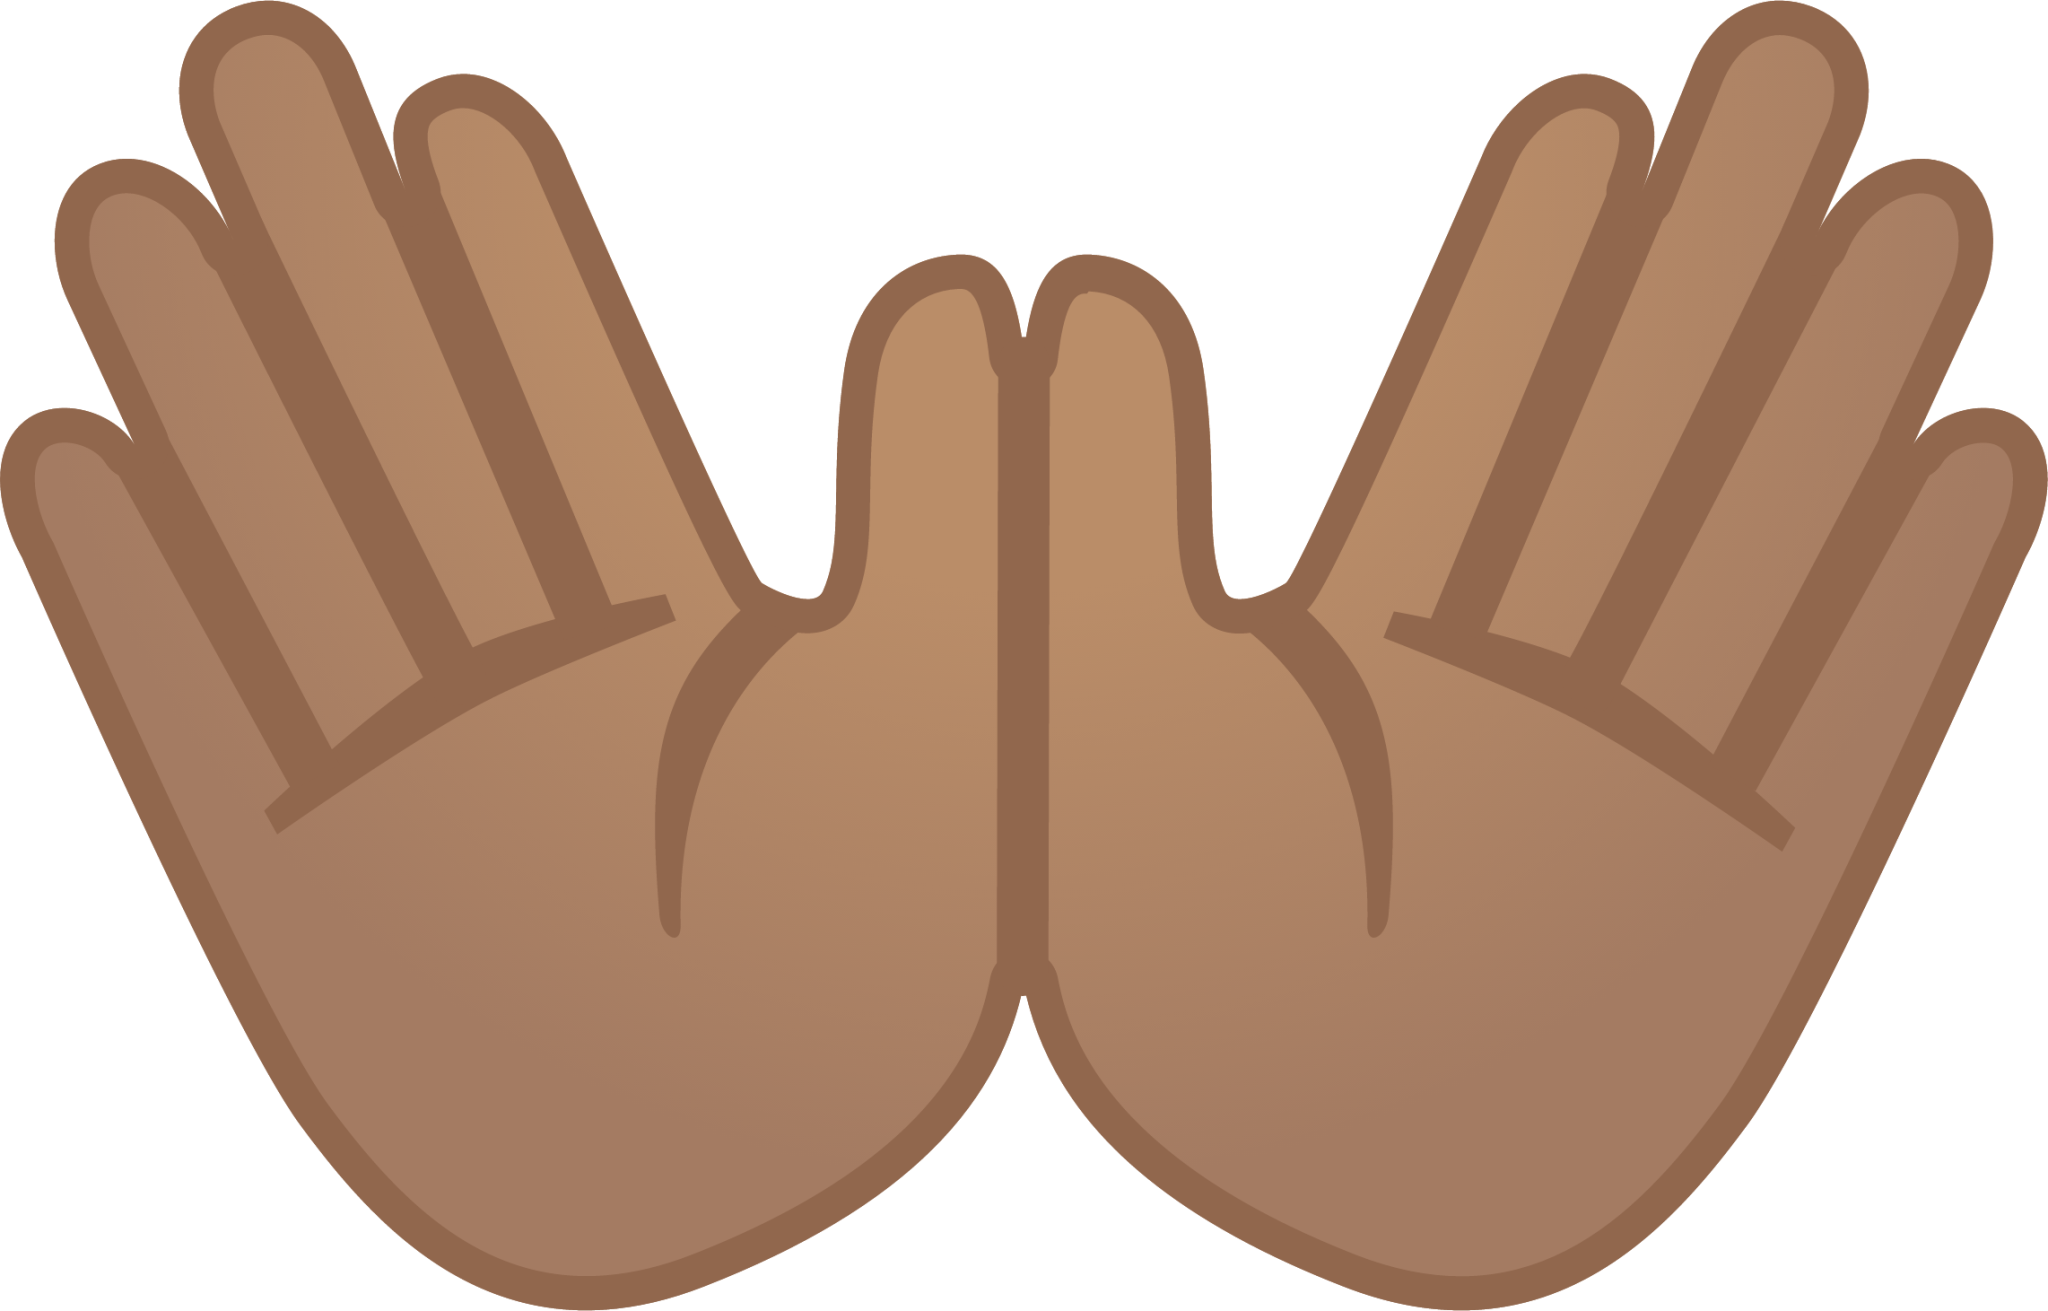 open hands: medium skin tone emoji